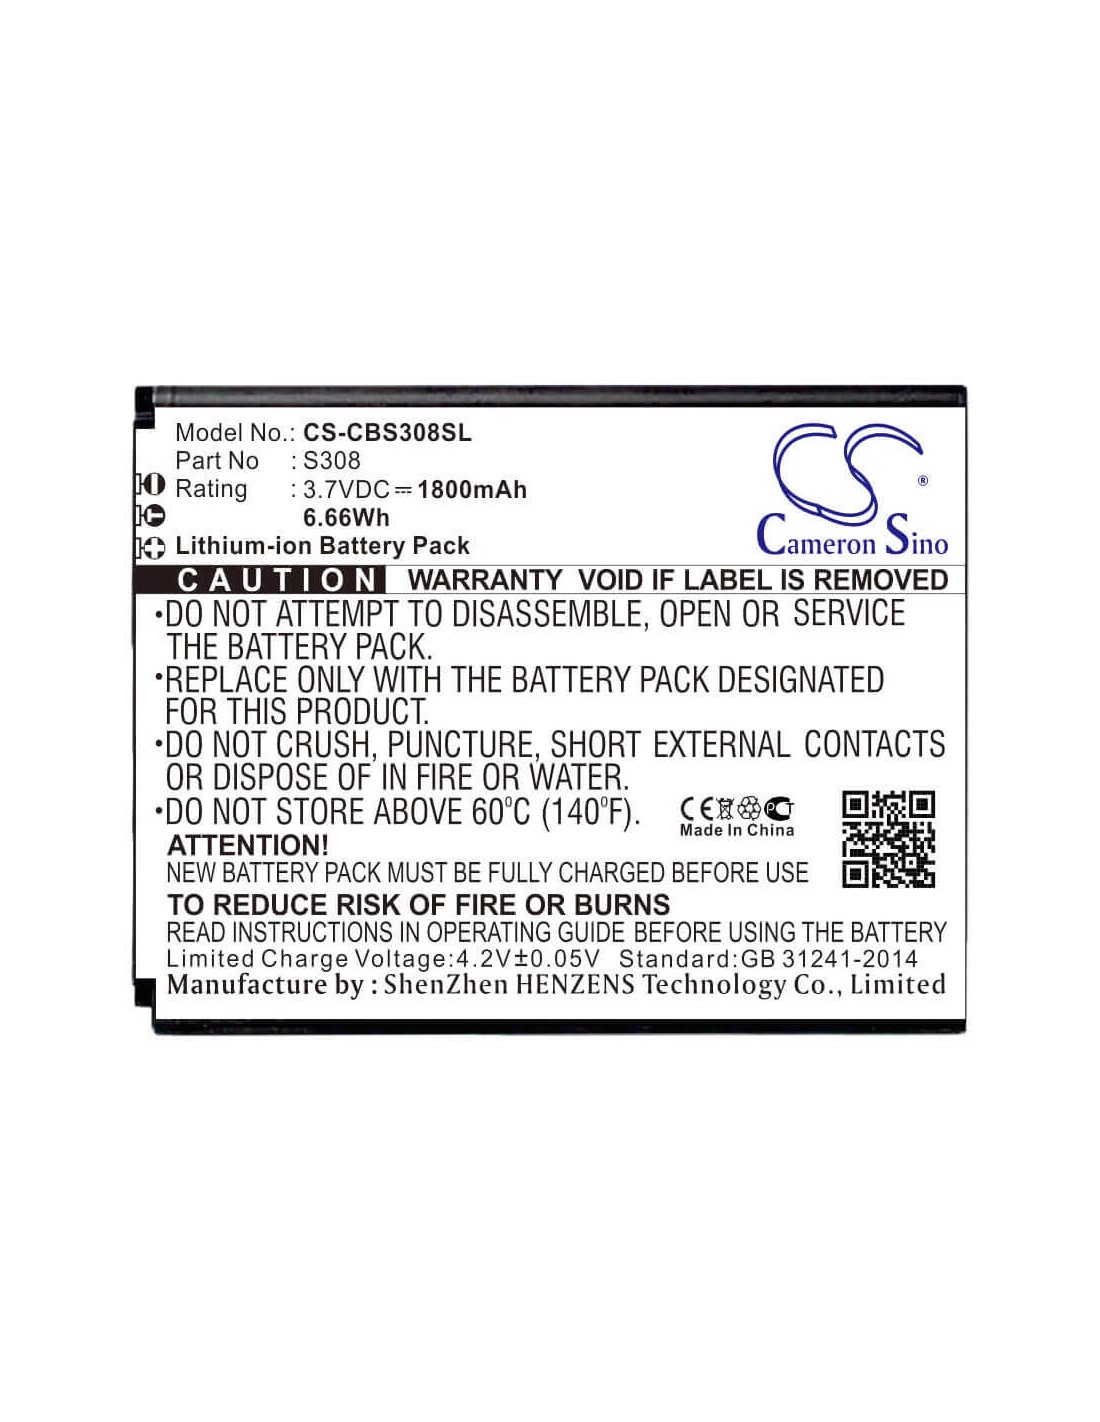 Battery for Cubot, S308 3.7V, 1800mAh - 6.66Wh